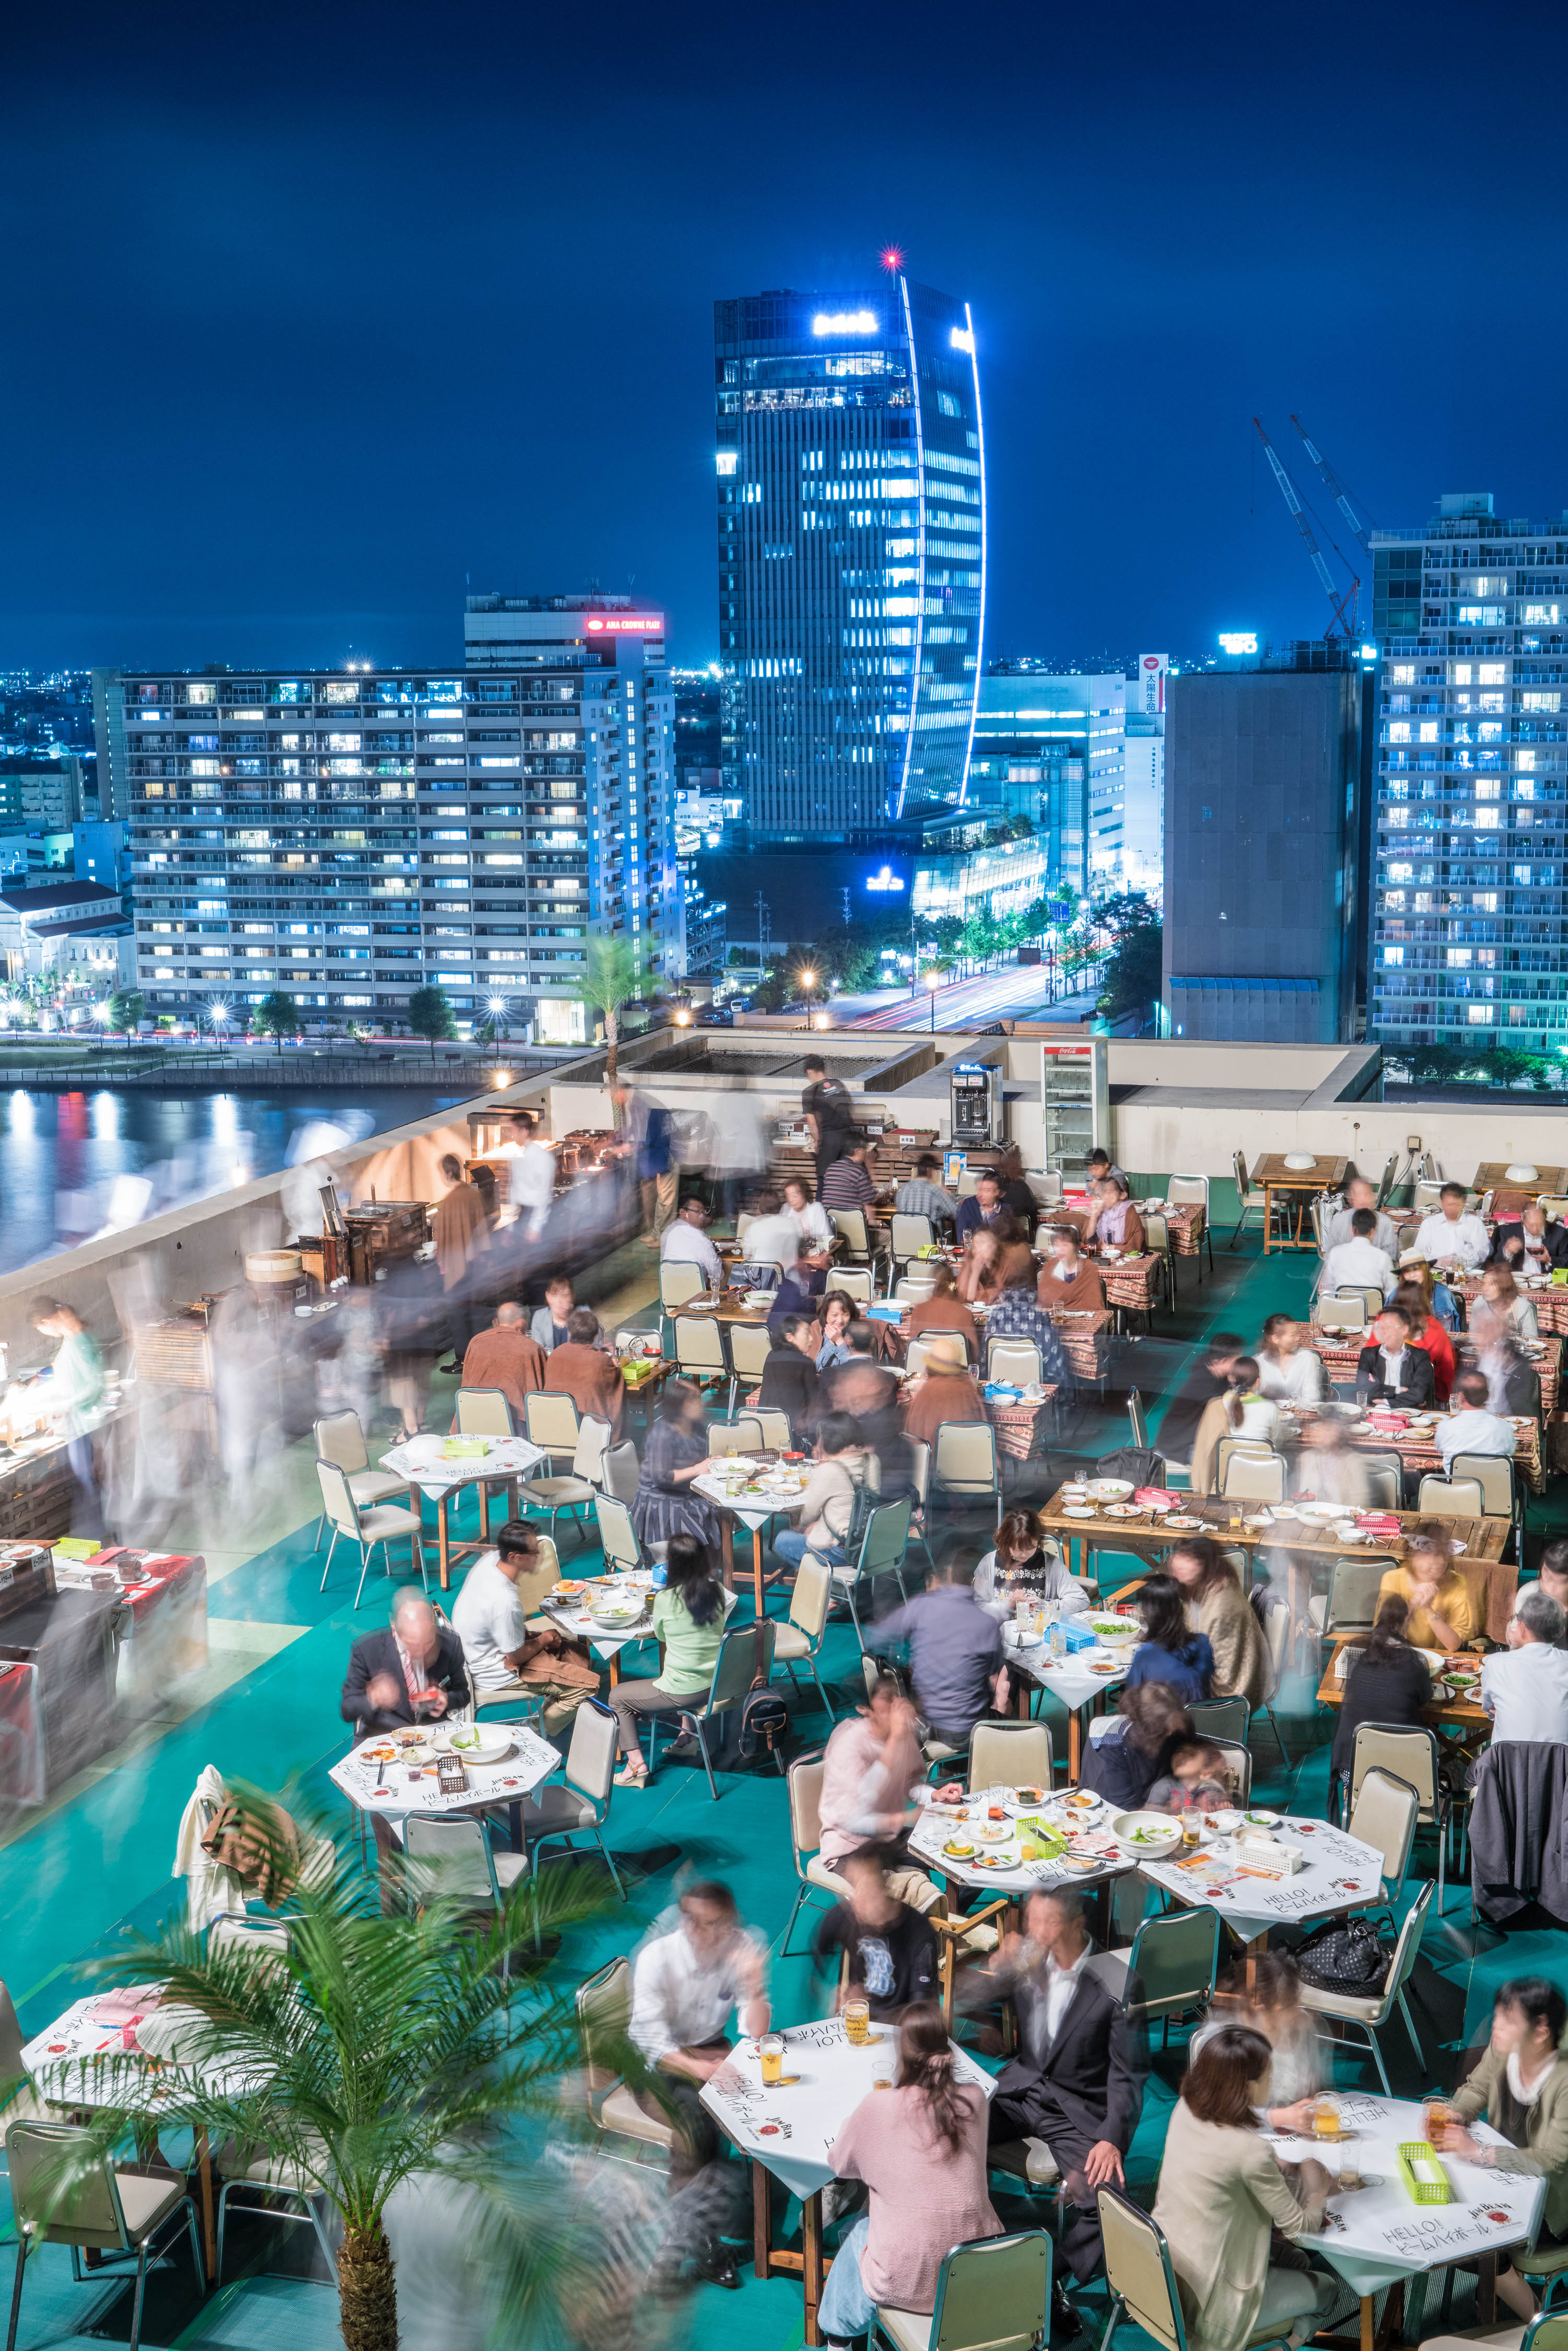 ホテルオークラ新潟 開業40周年企画 地上50メートルのビアガーデン The Rooftop Beer Terrace 開催 オークラ ホテルズ リゾーツのプレスリリース